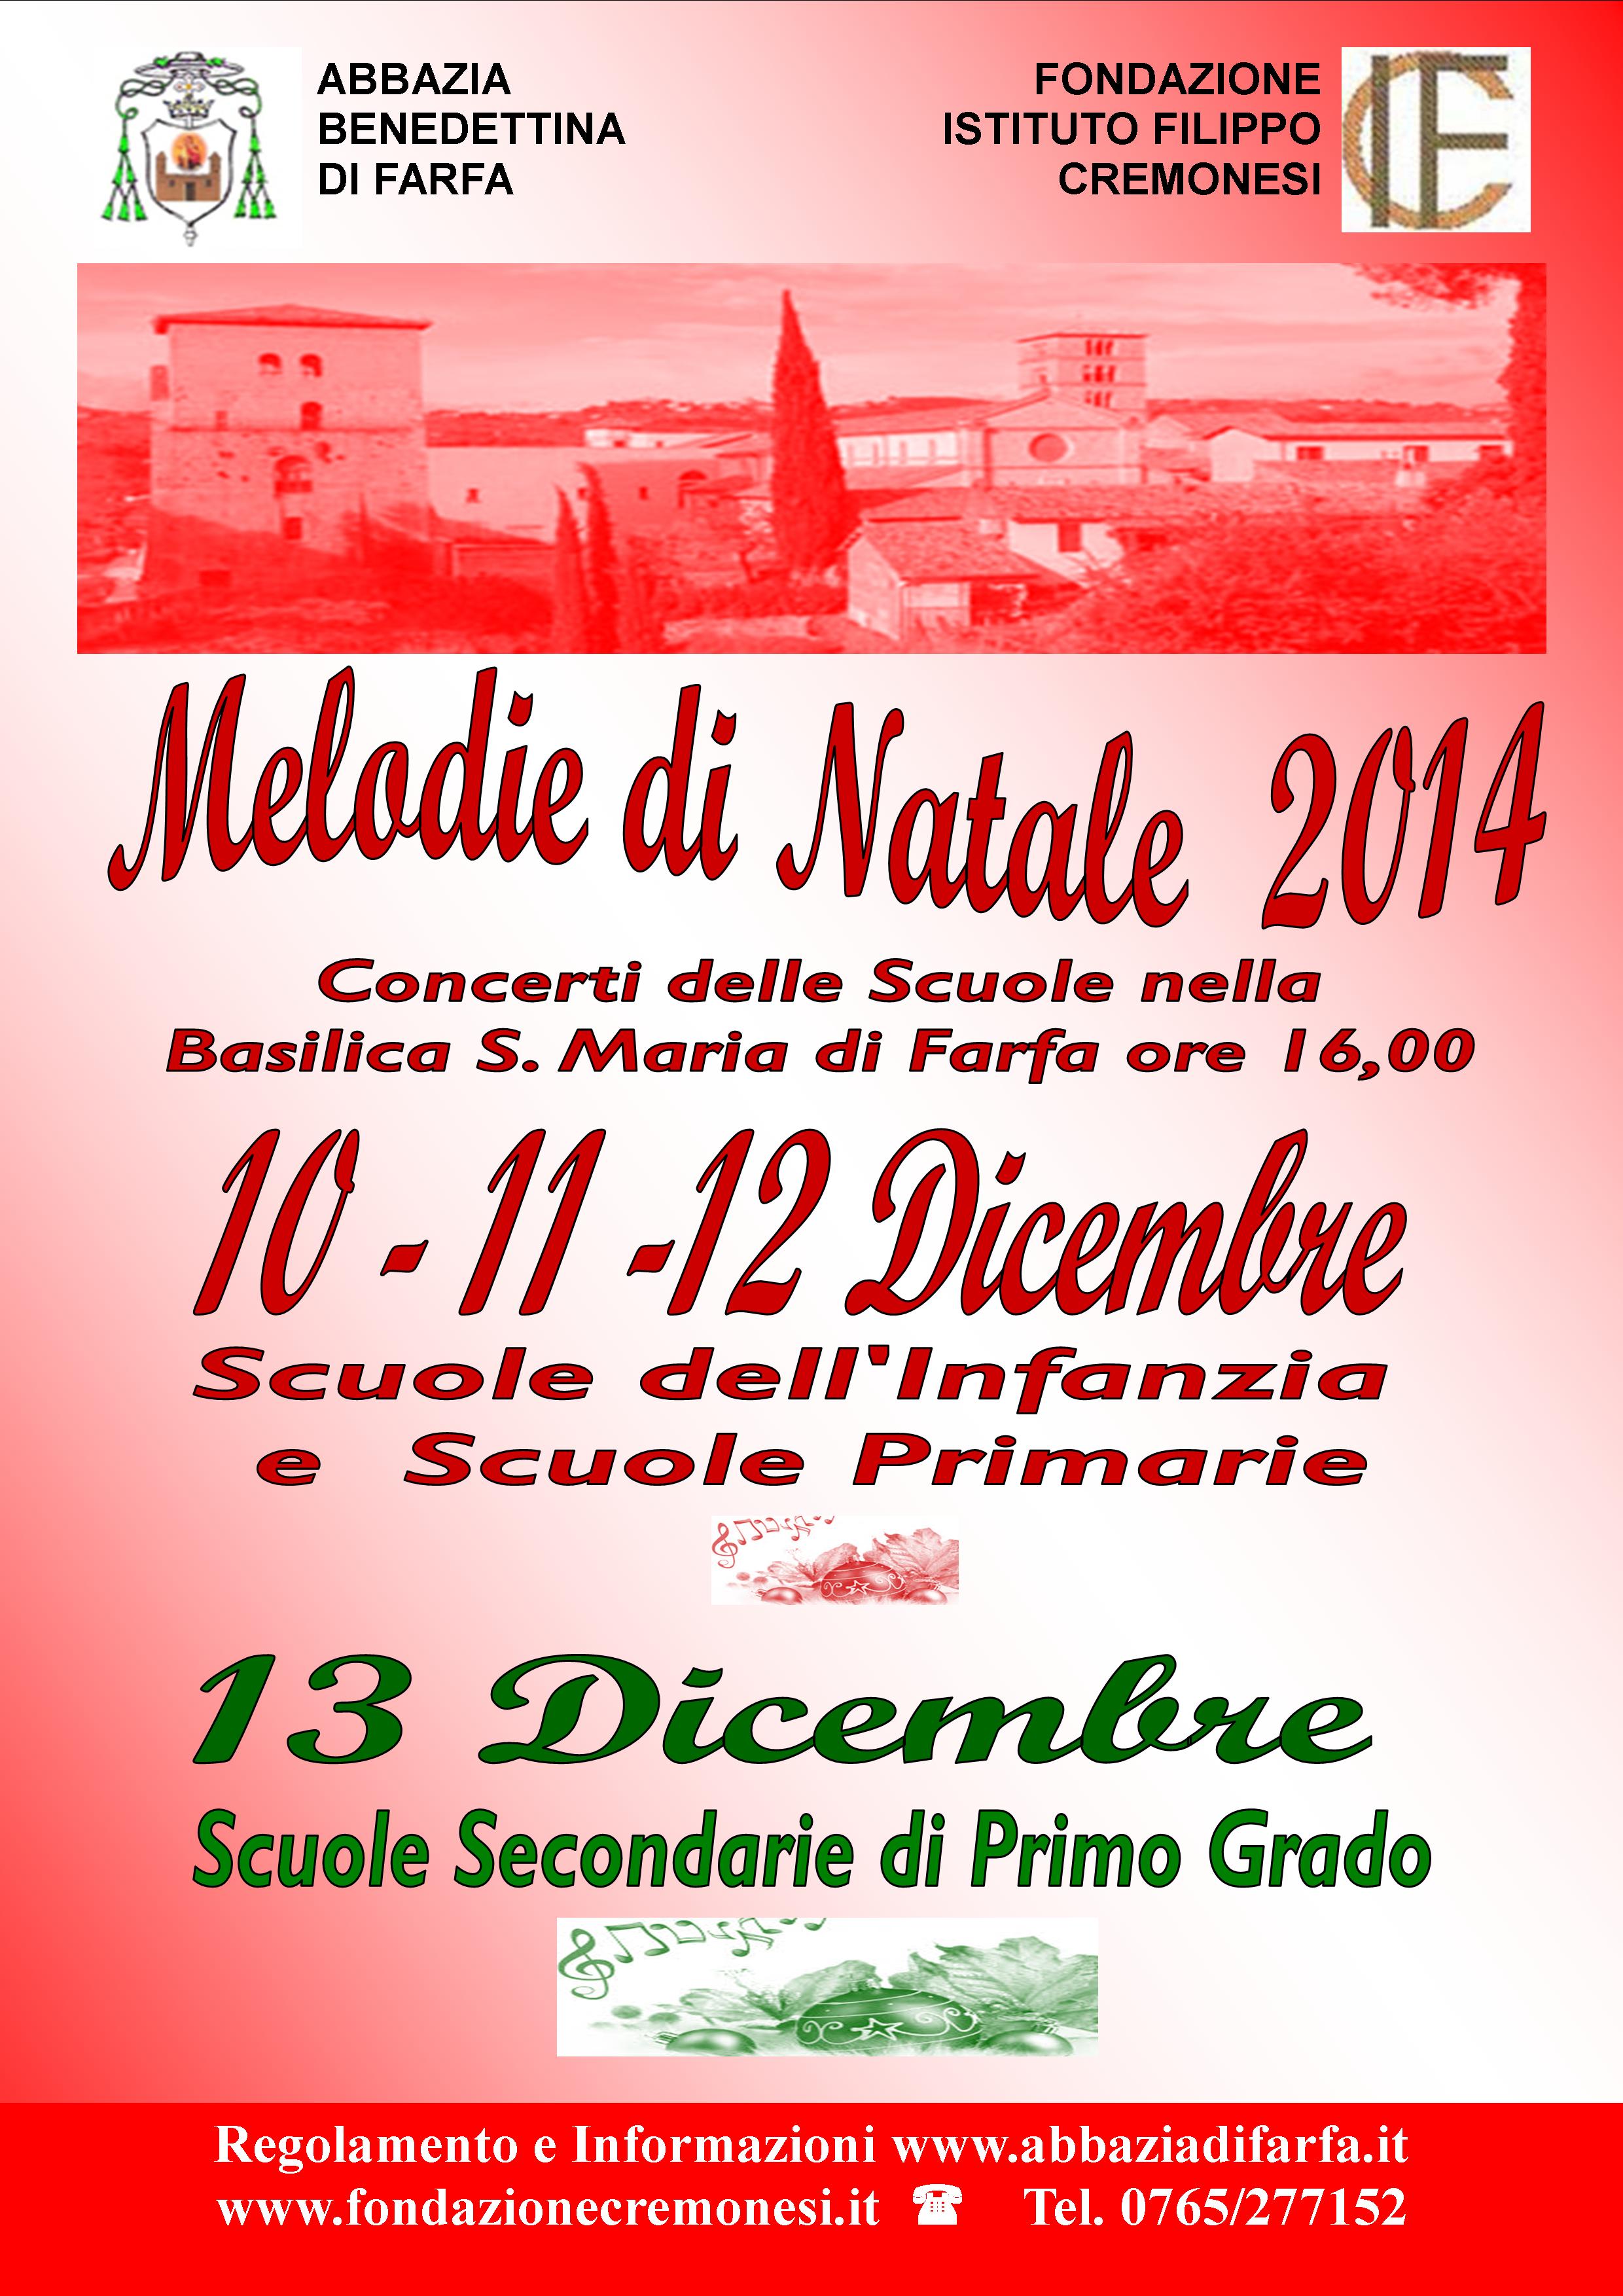 Adesioni aperte per la sesta Edizione di “Melodie di Natale” – 10-13 dicembre 2014